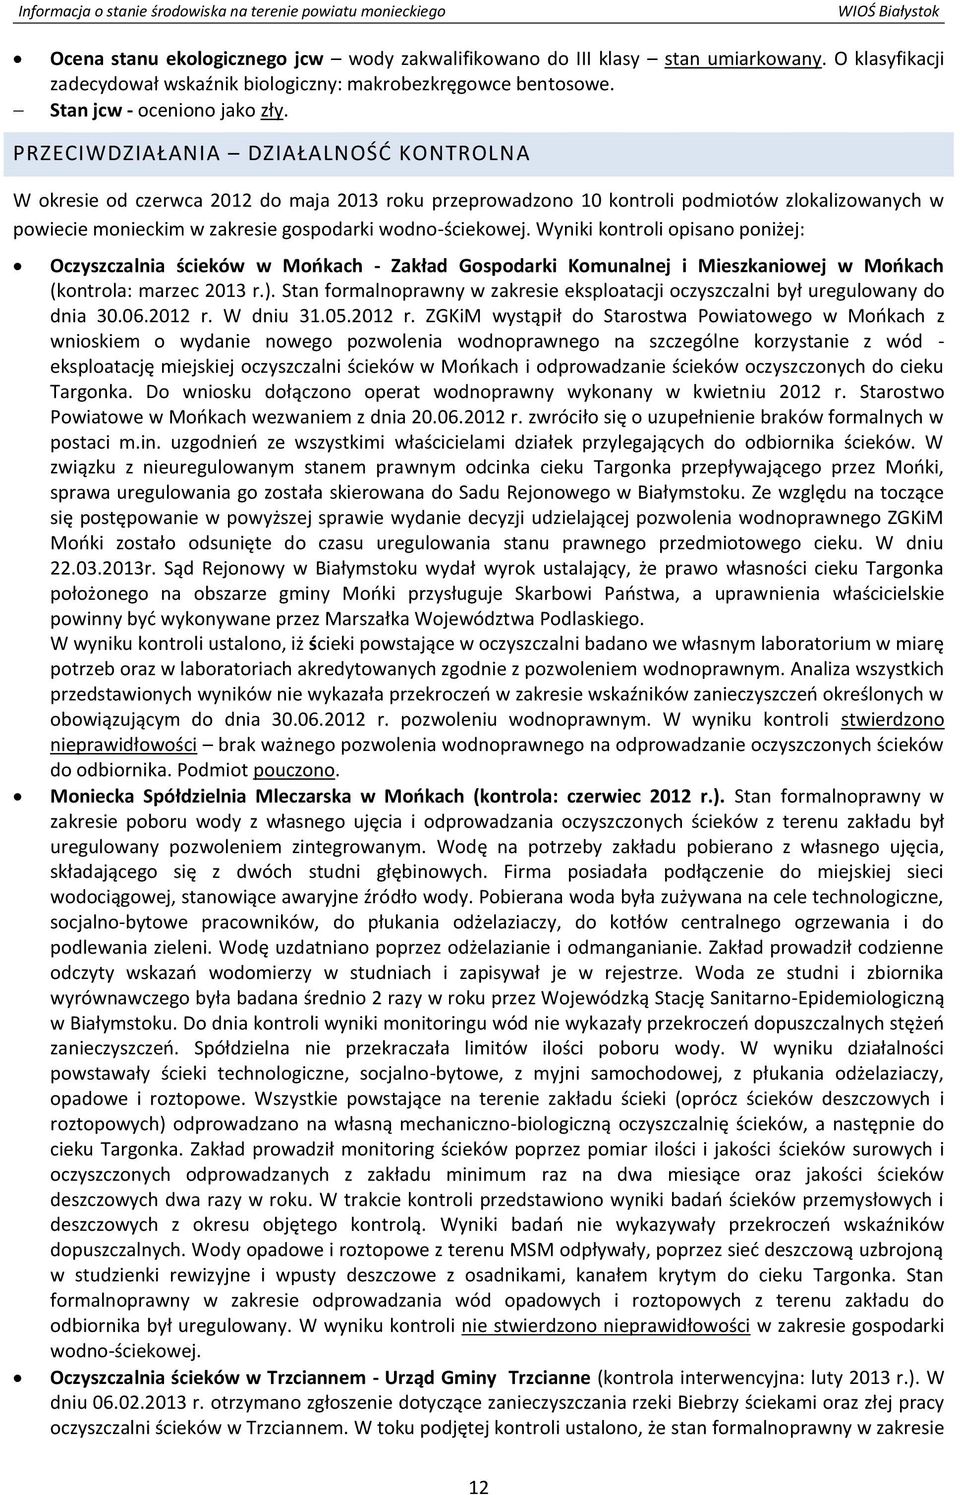 Wyniki kontroli opisano poniżej: Oczyszczalnia ścieków w Mońkach - Zakład Gospodarki Komunalnej i Mieszkaniowej w Mońkach (kontrola: marzec 2013 r.).